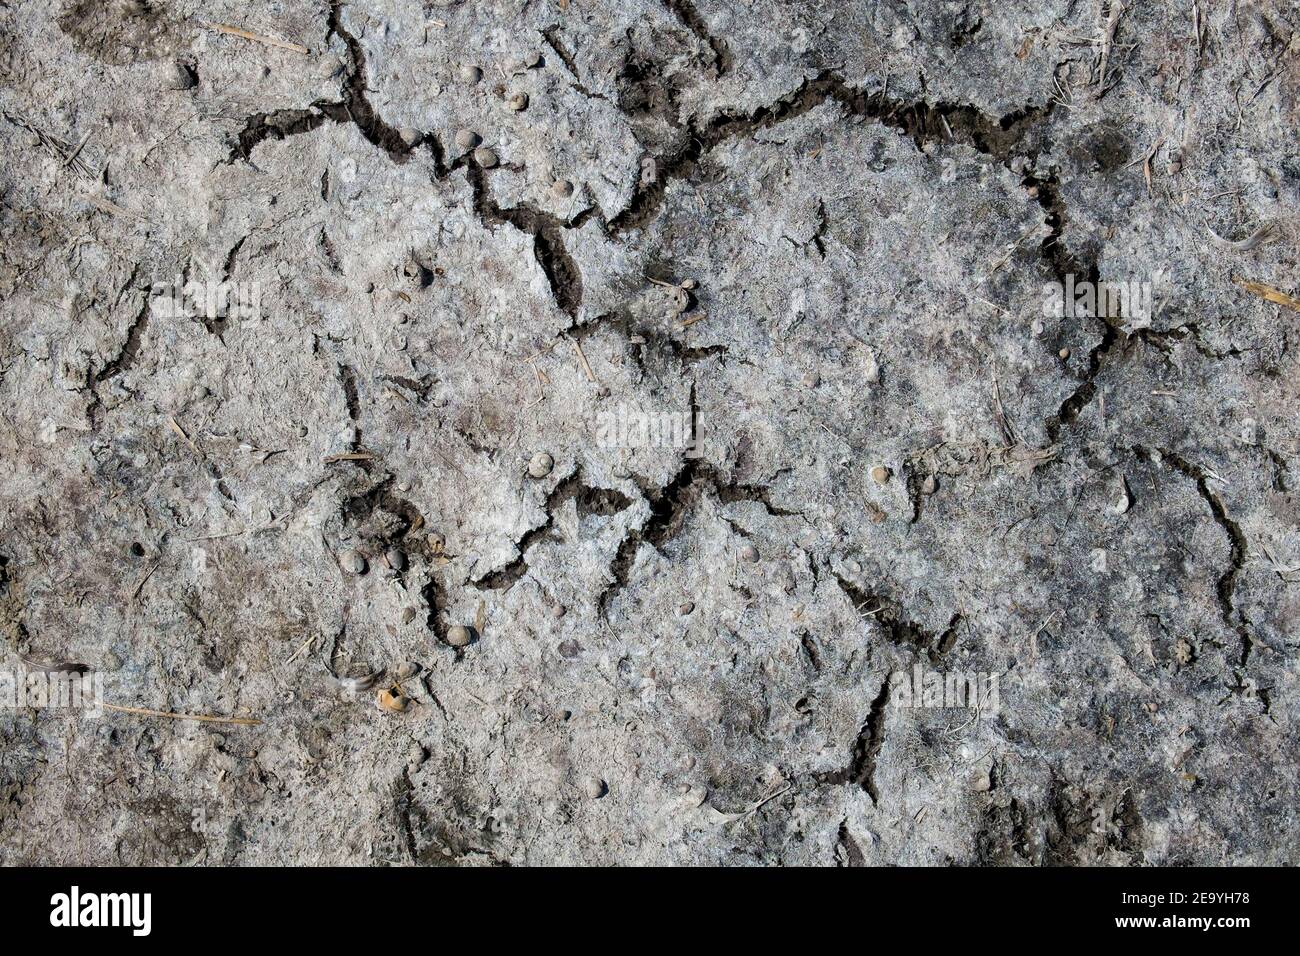 Texture de la terre sèche fissurée avec de petites coquillages Banque D'Images